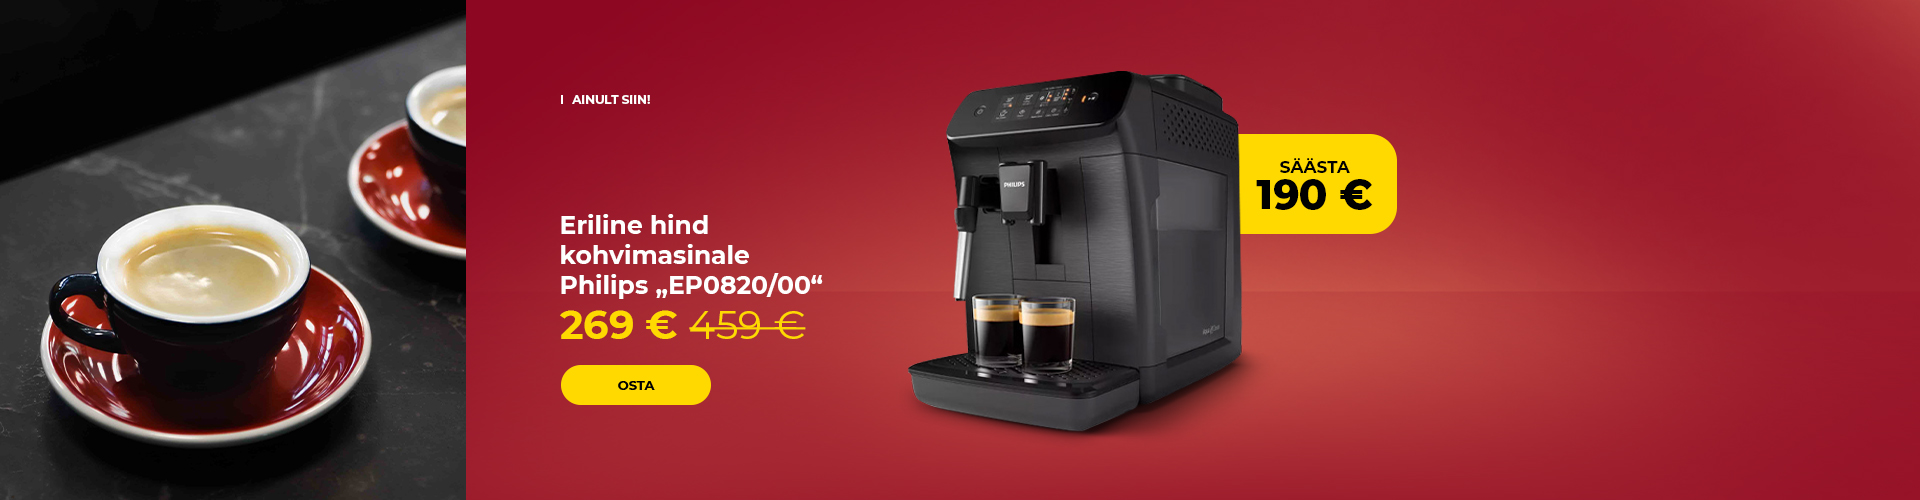 Eriline hind kohvimasinale Philips "EP0820/00"